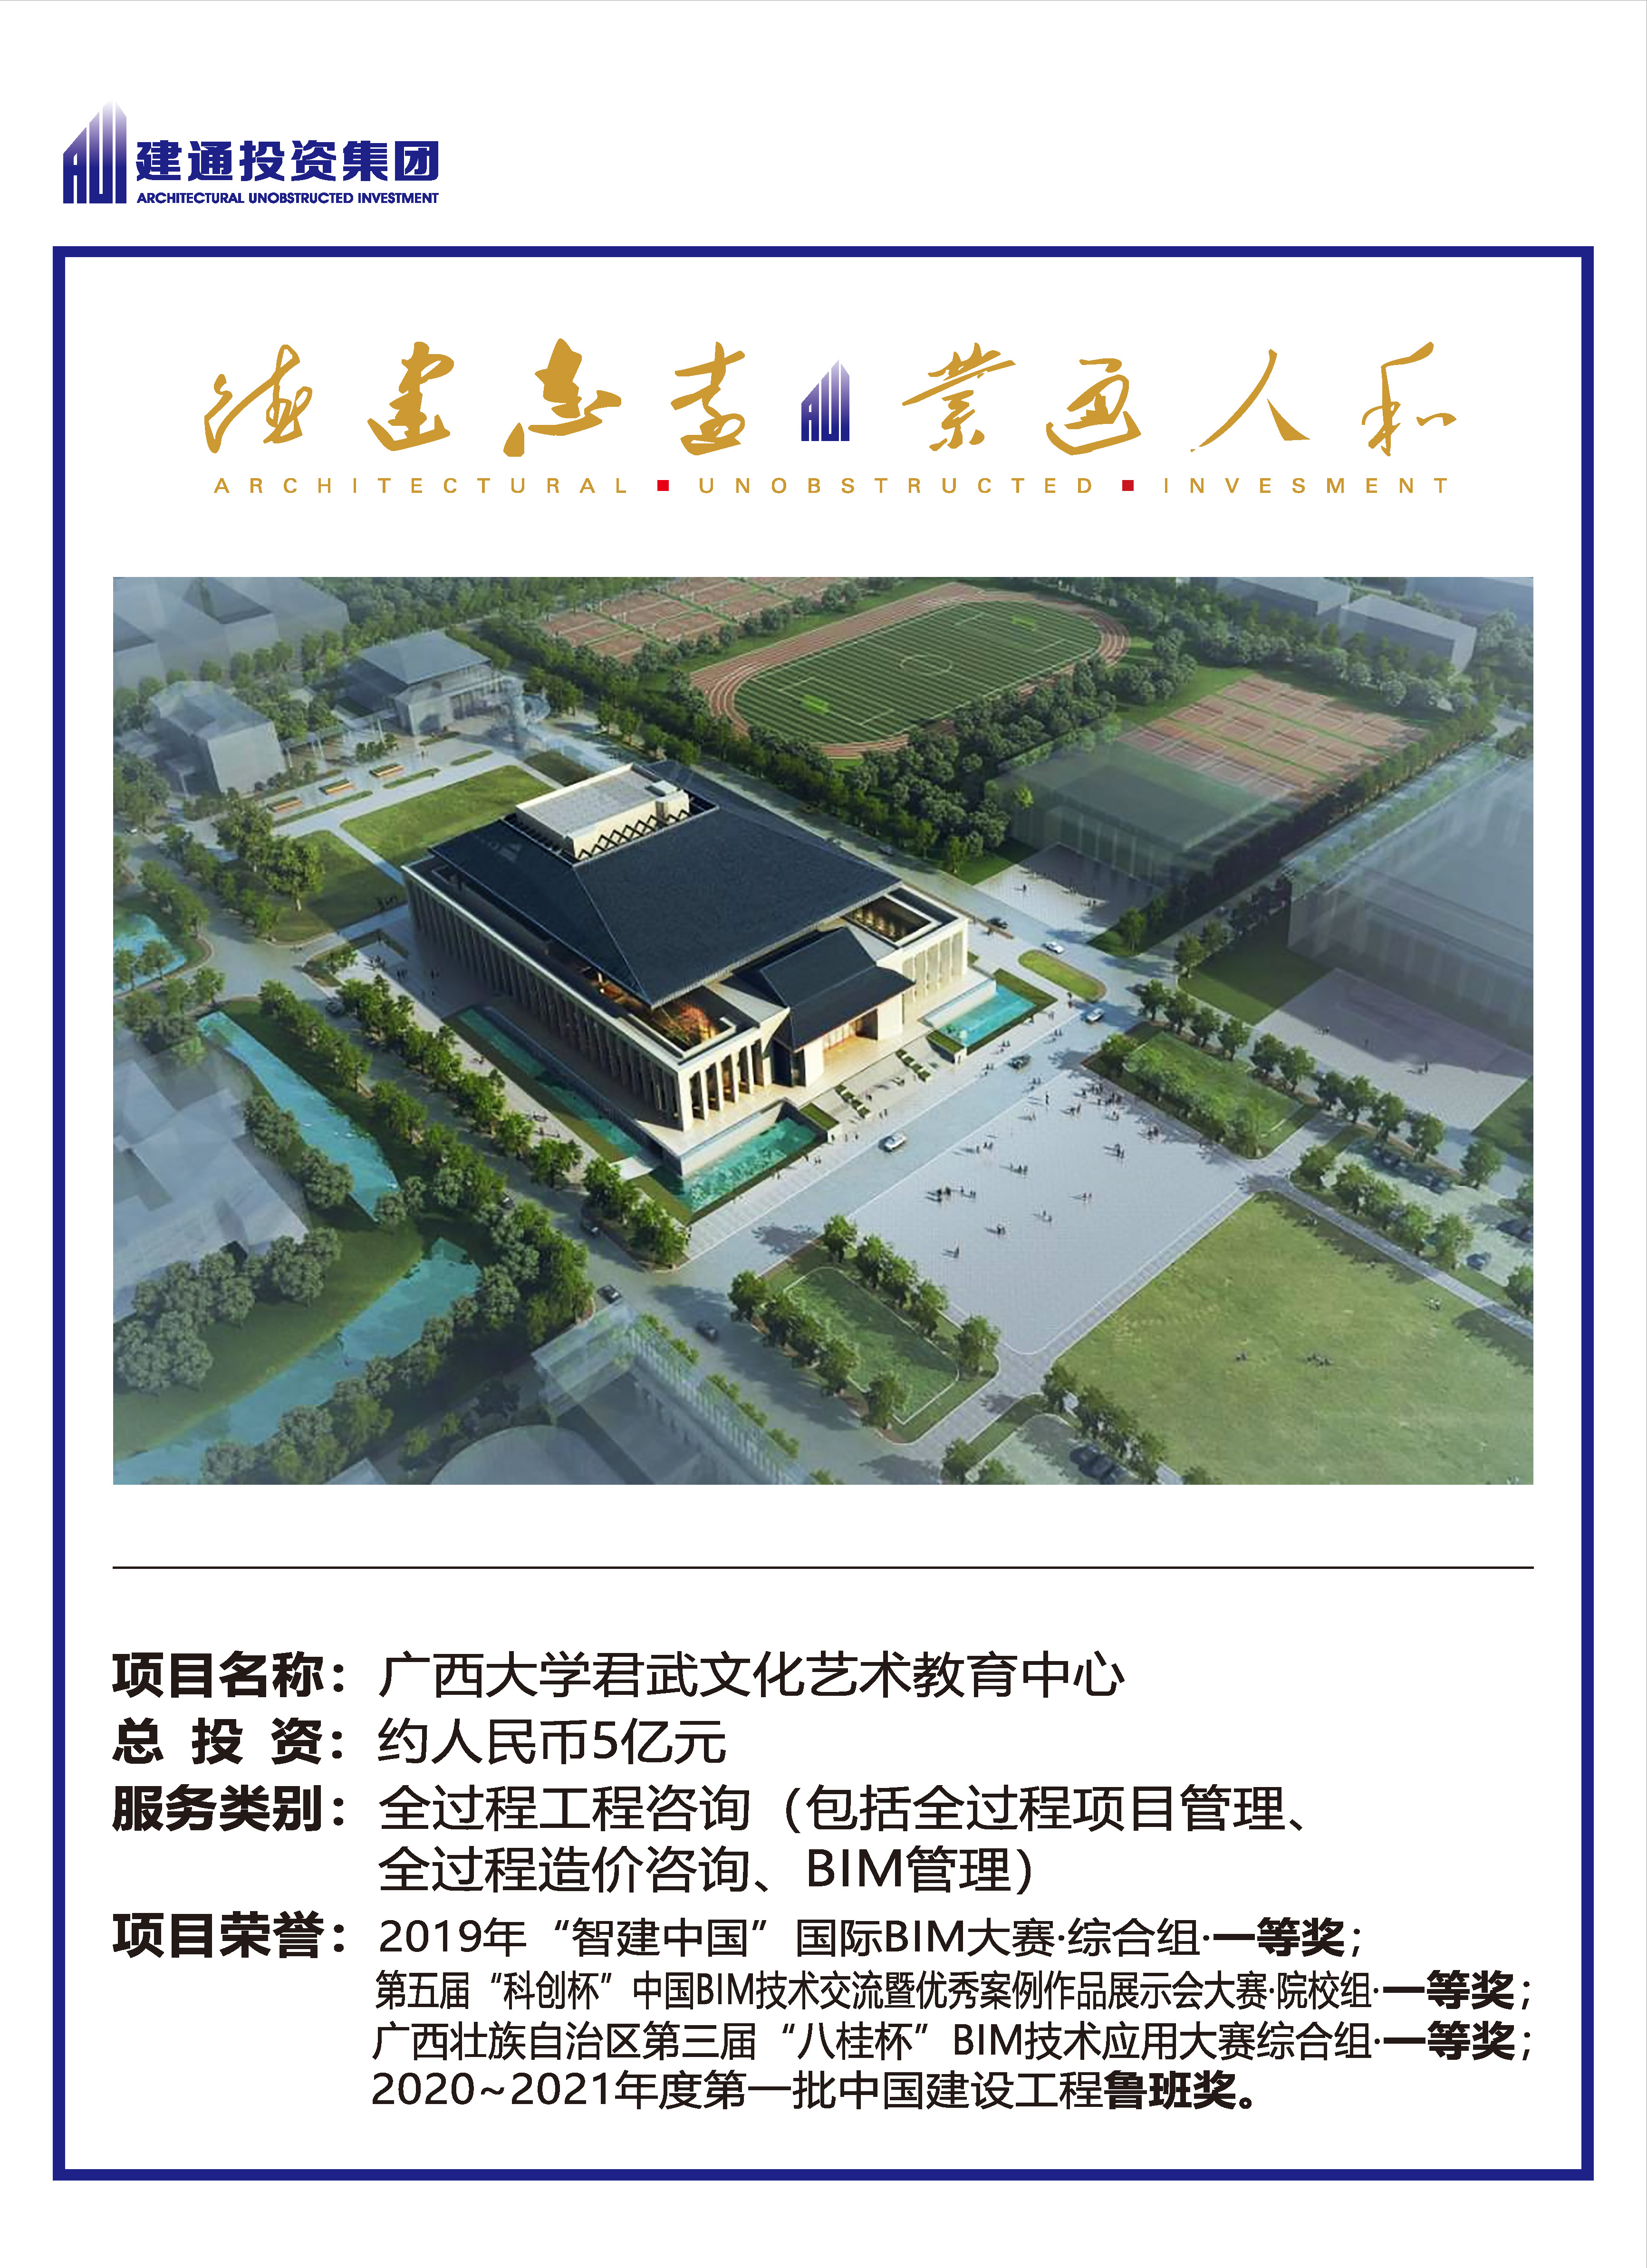 2022年【九州体育】(中国)股份有限公司官网项目摘录_页面_05.jpg